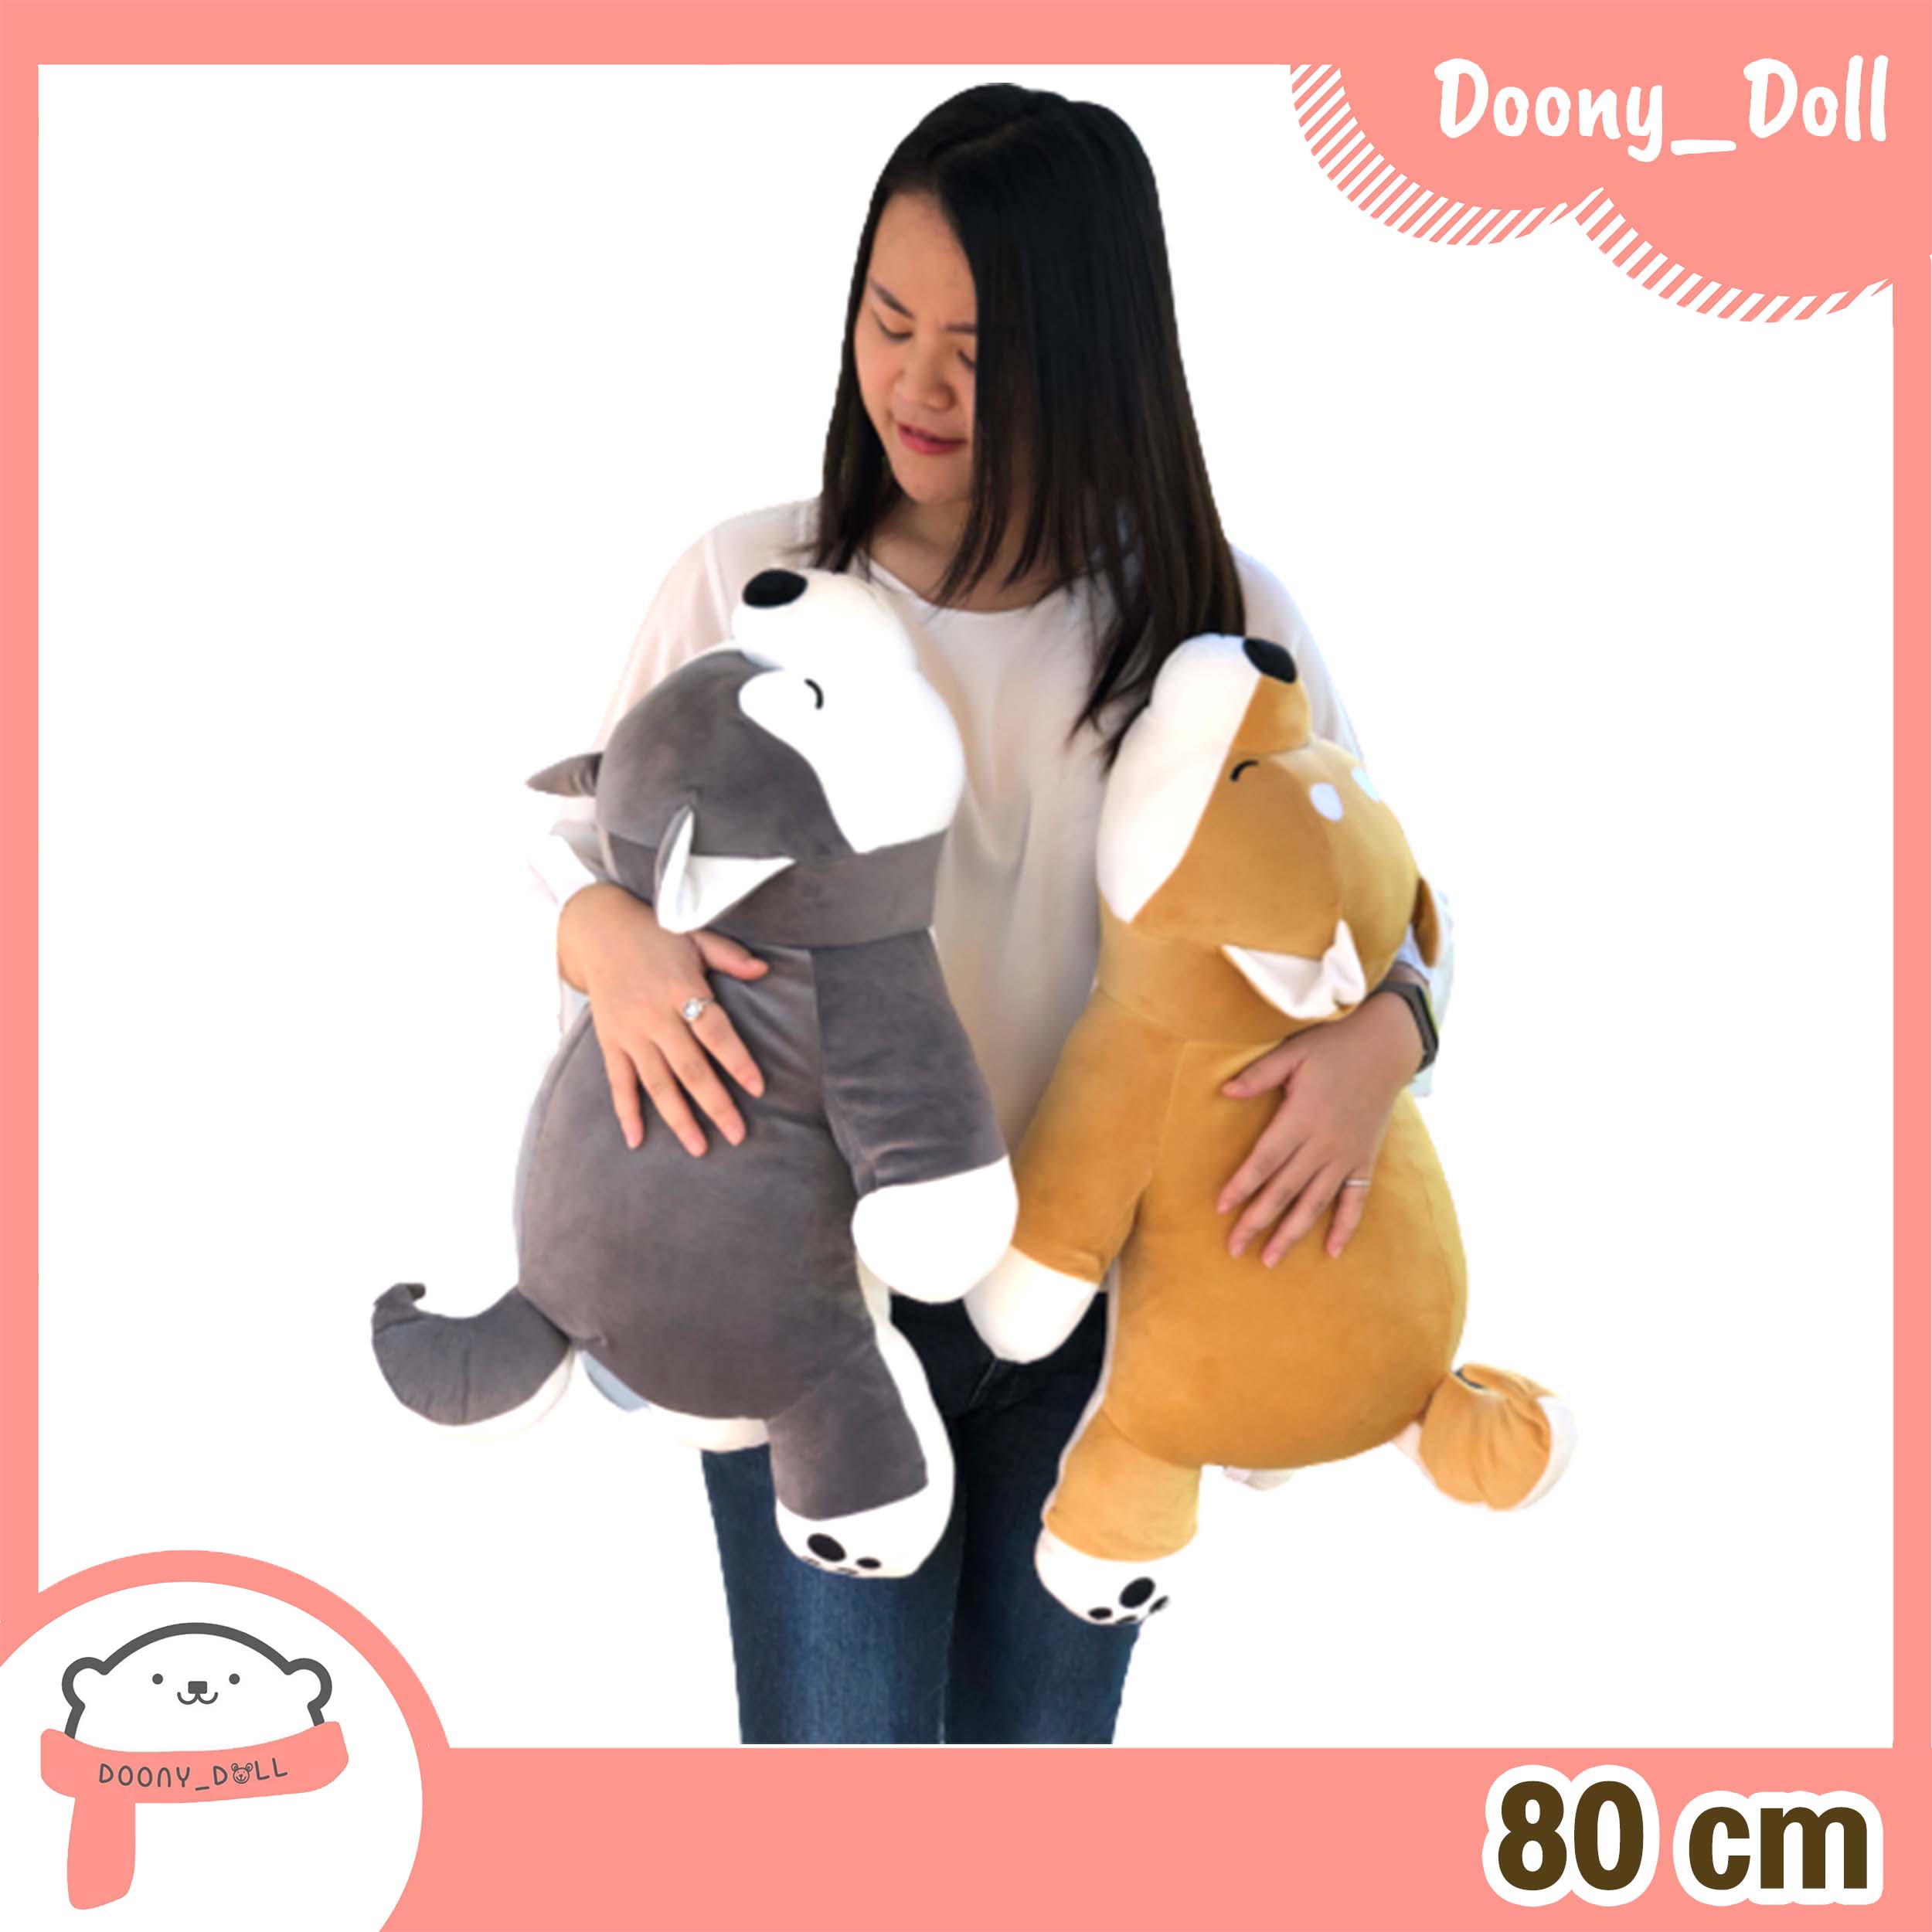 Doony_doll ตุ๊กตา หมาชิบะ หมาไซบีเรียน 80cm *ของขวัญวันเกิด ของขวัญให้แฟน วาเลนไทน์ ของขวัญปัจฉิม